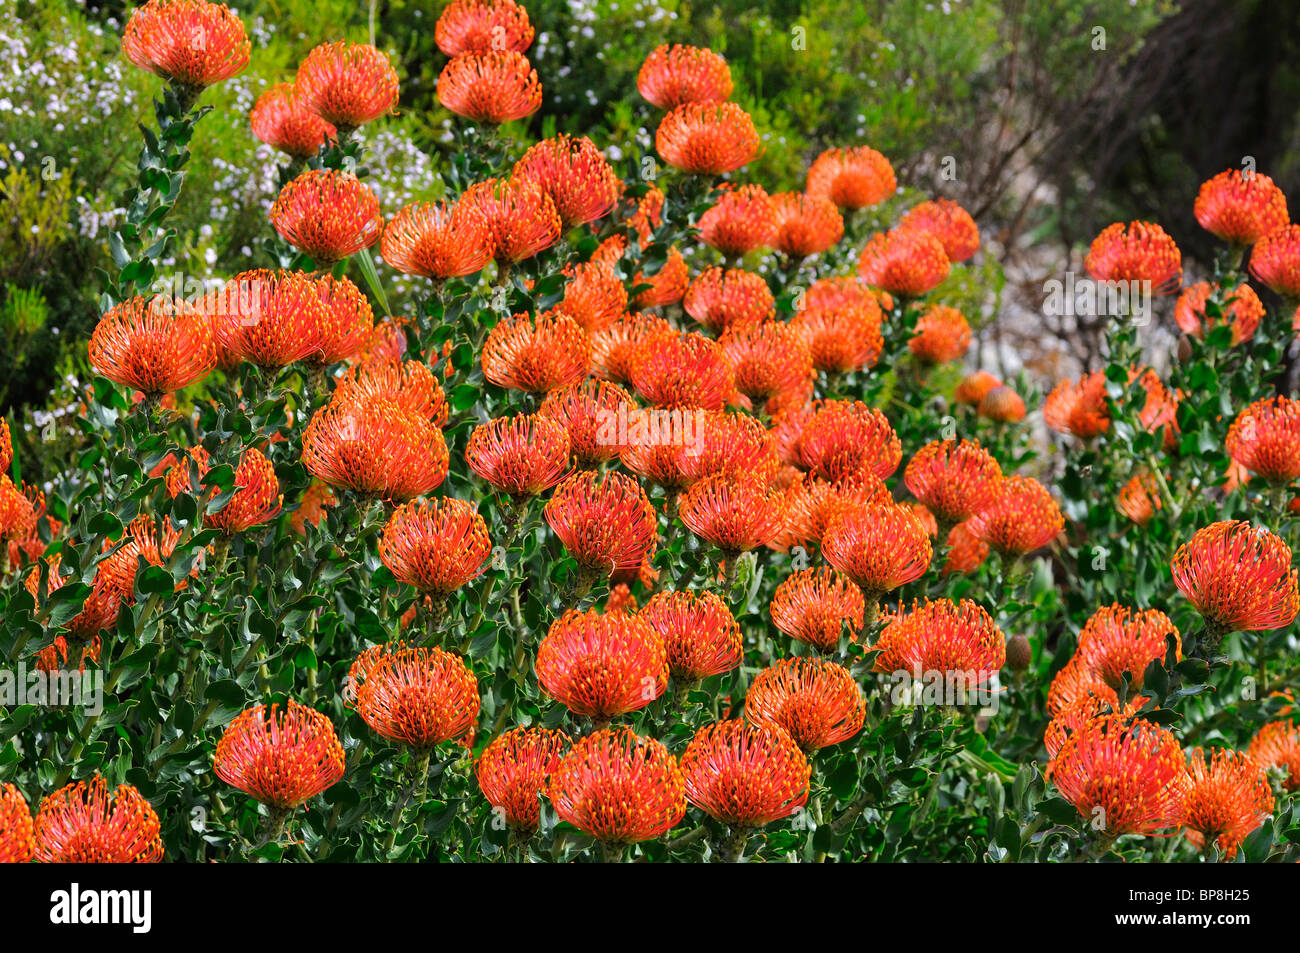 Leucospermum cordifolium, Cape Floral Kingdom, Proteacea, South Africa Stock Photo